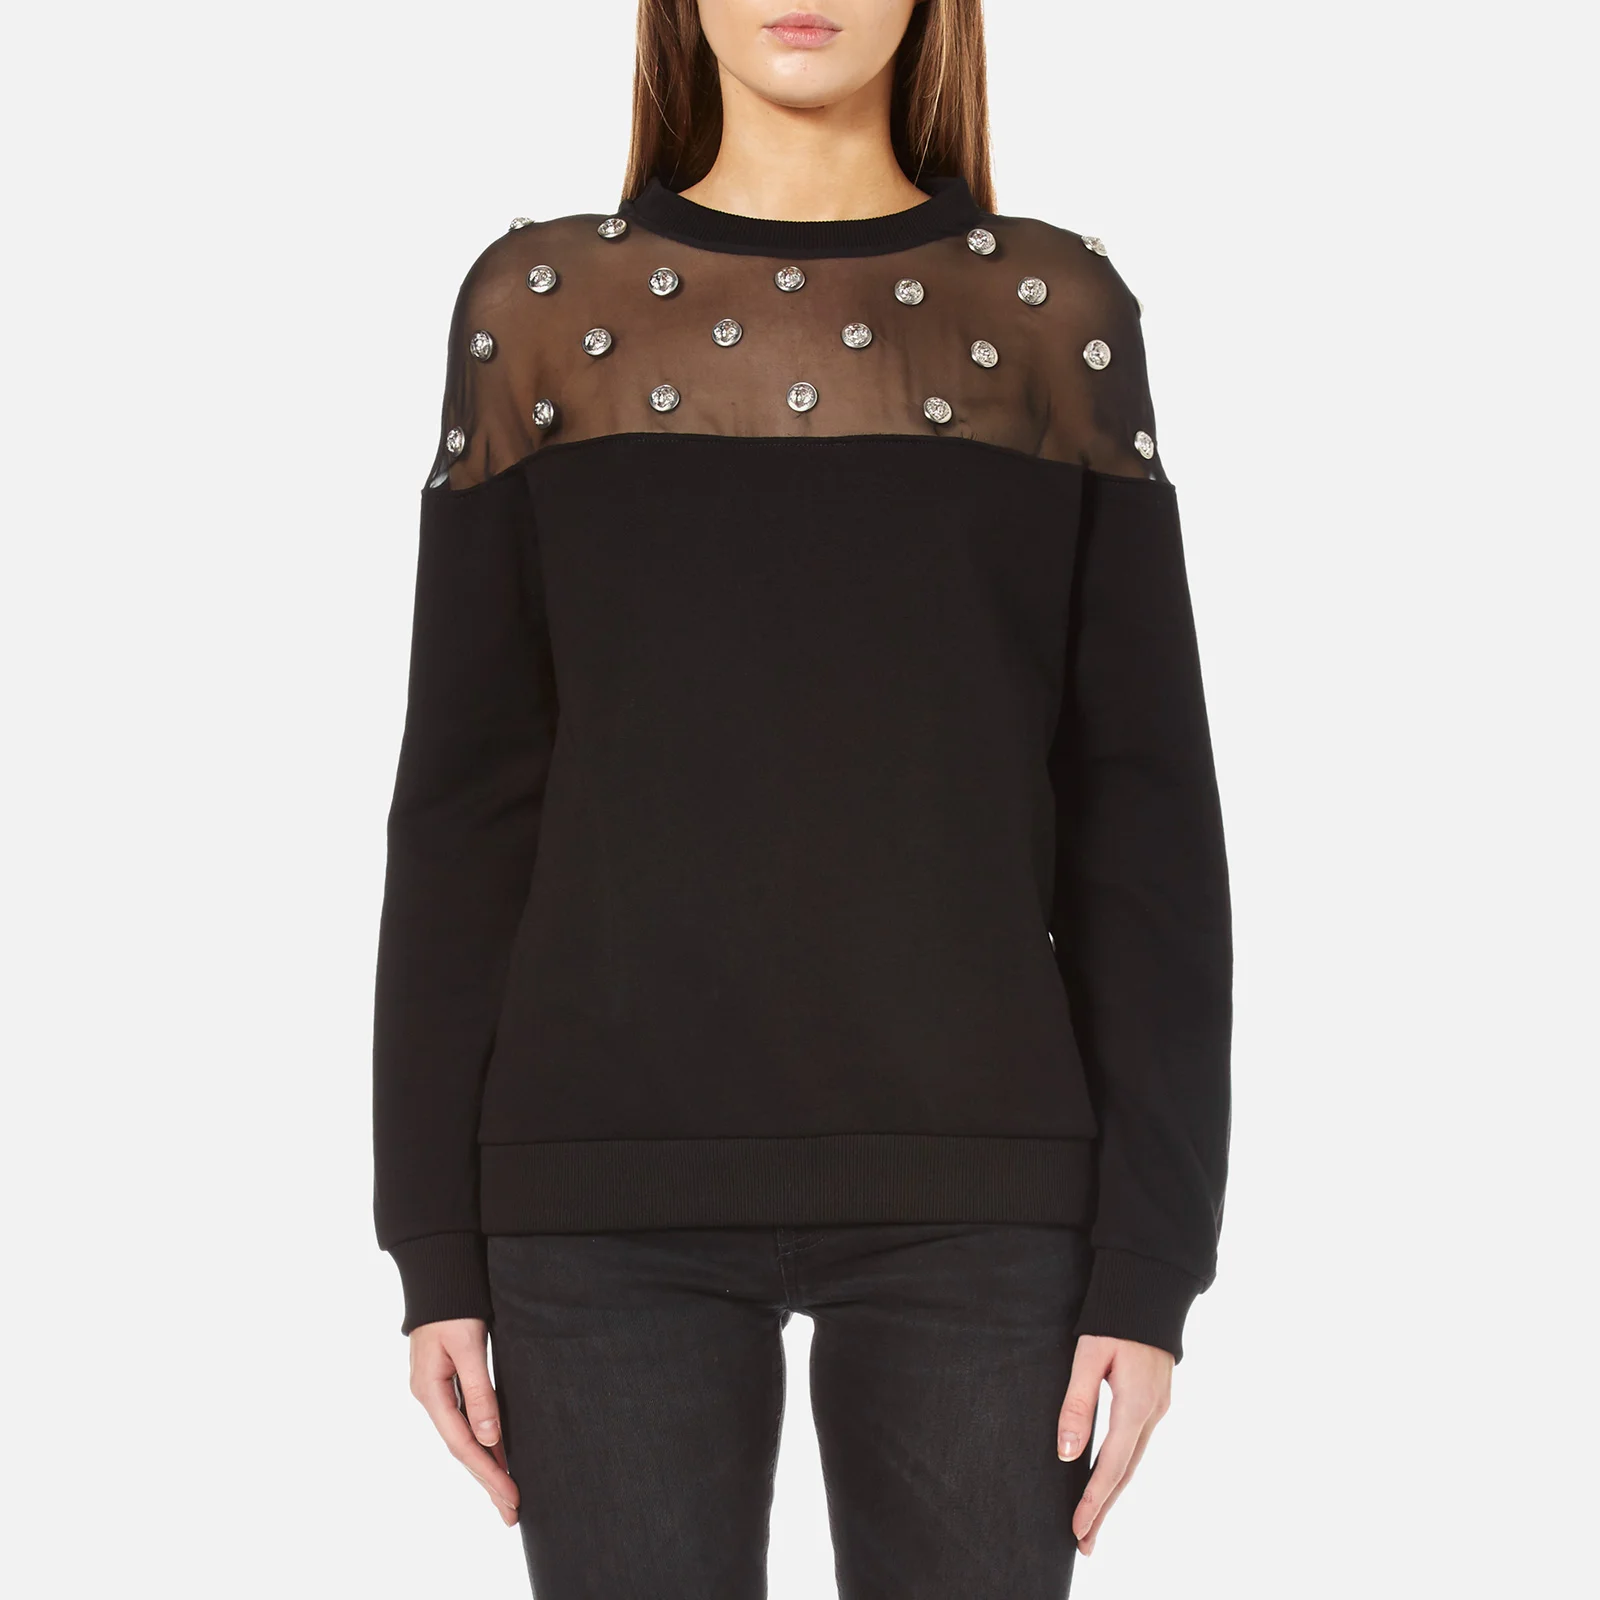 Versus Versace Women's Mesh Top Sweatshirt - Black Image 1